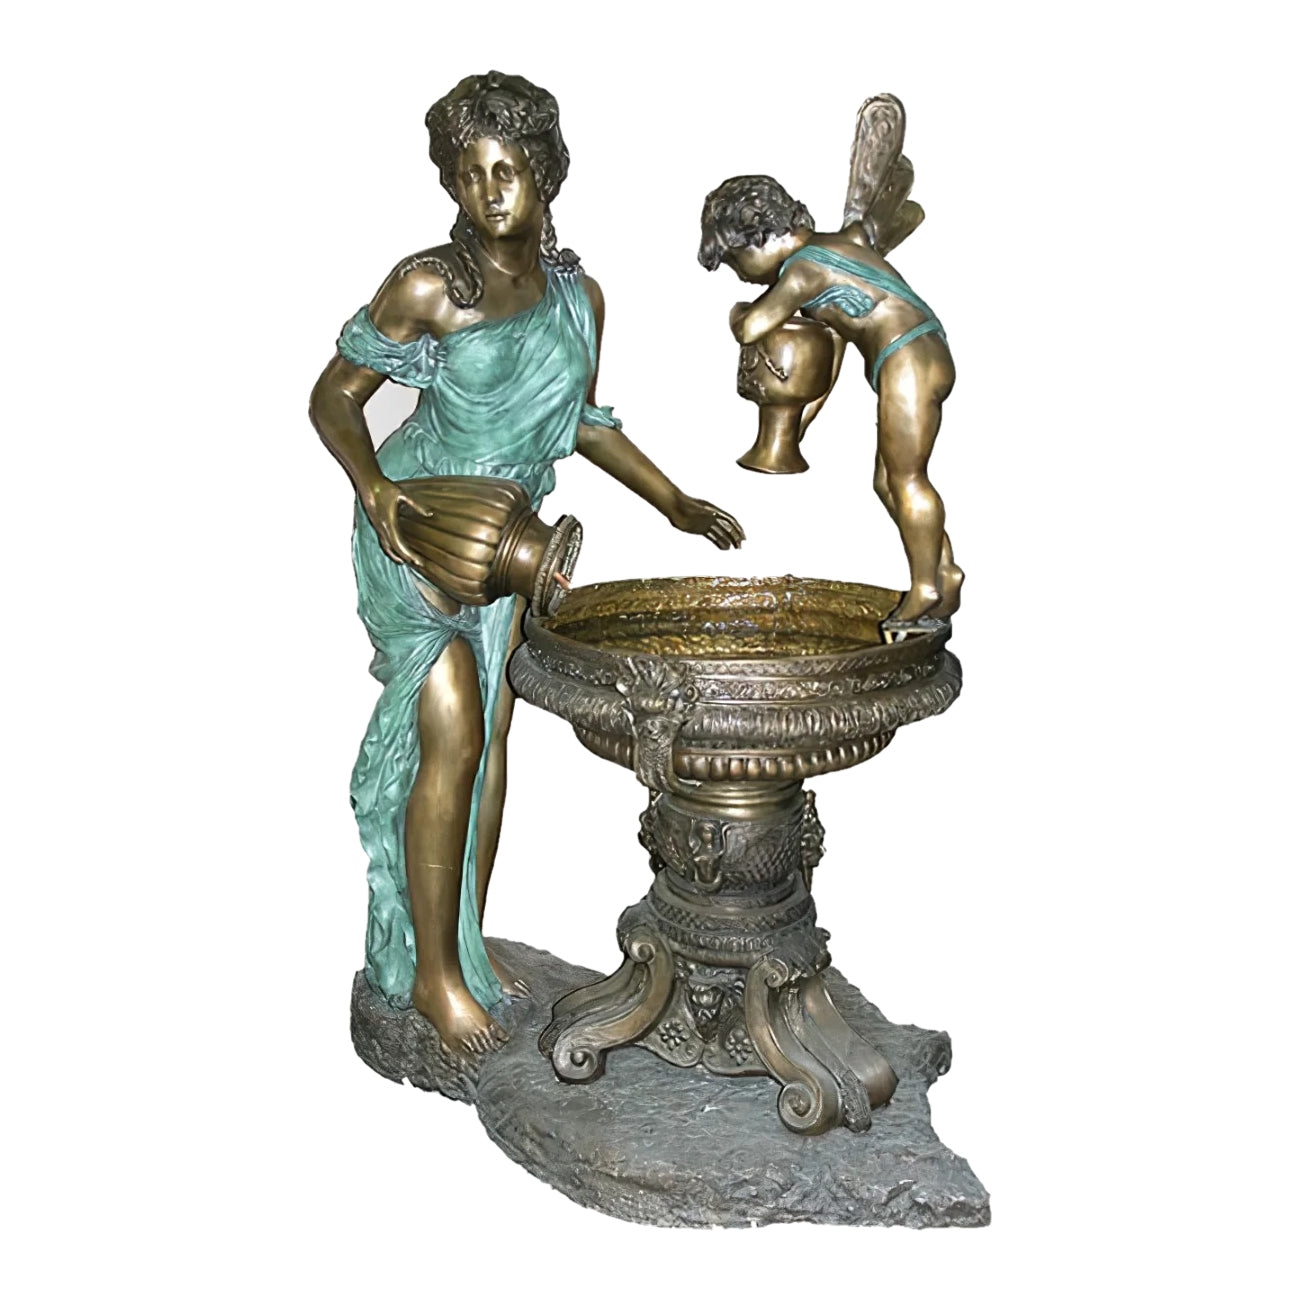 Lady with Cherub Fountain